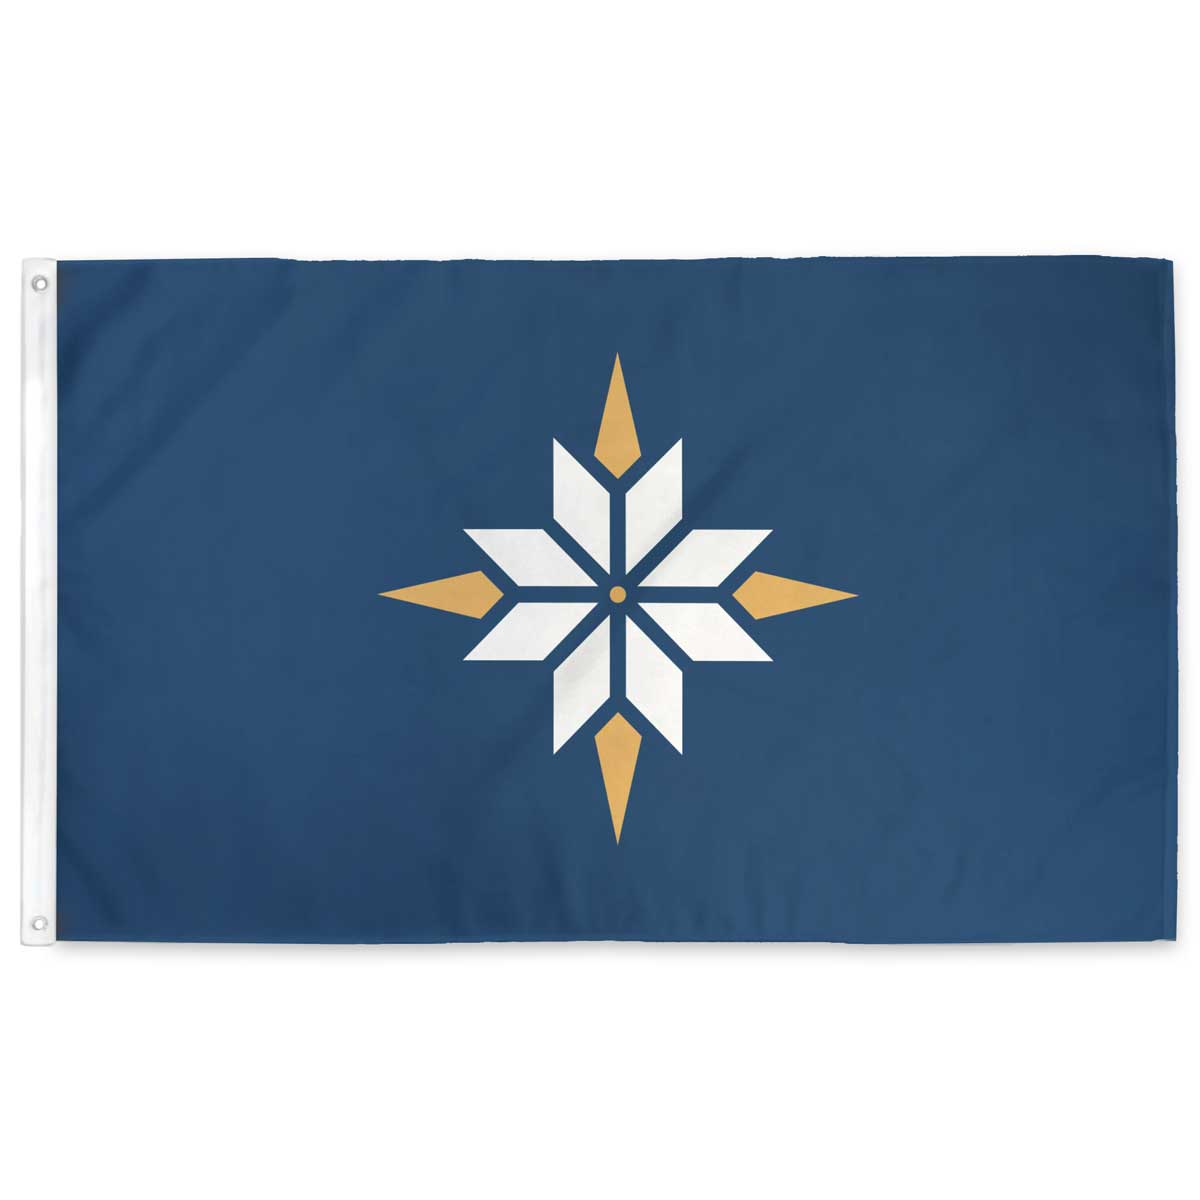 Starflake Minnesota Flag Design by Brandon Hundt